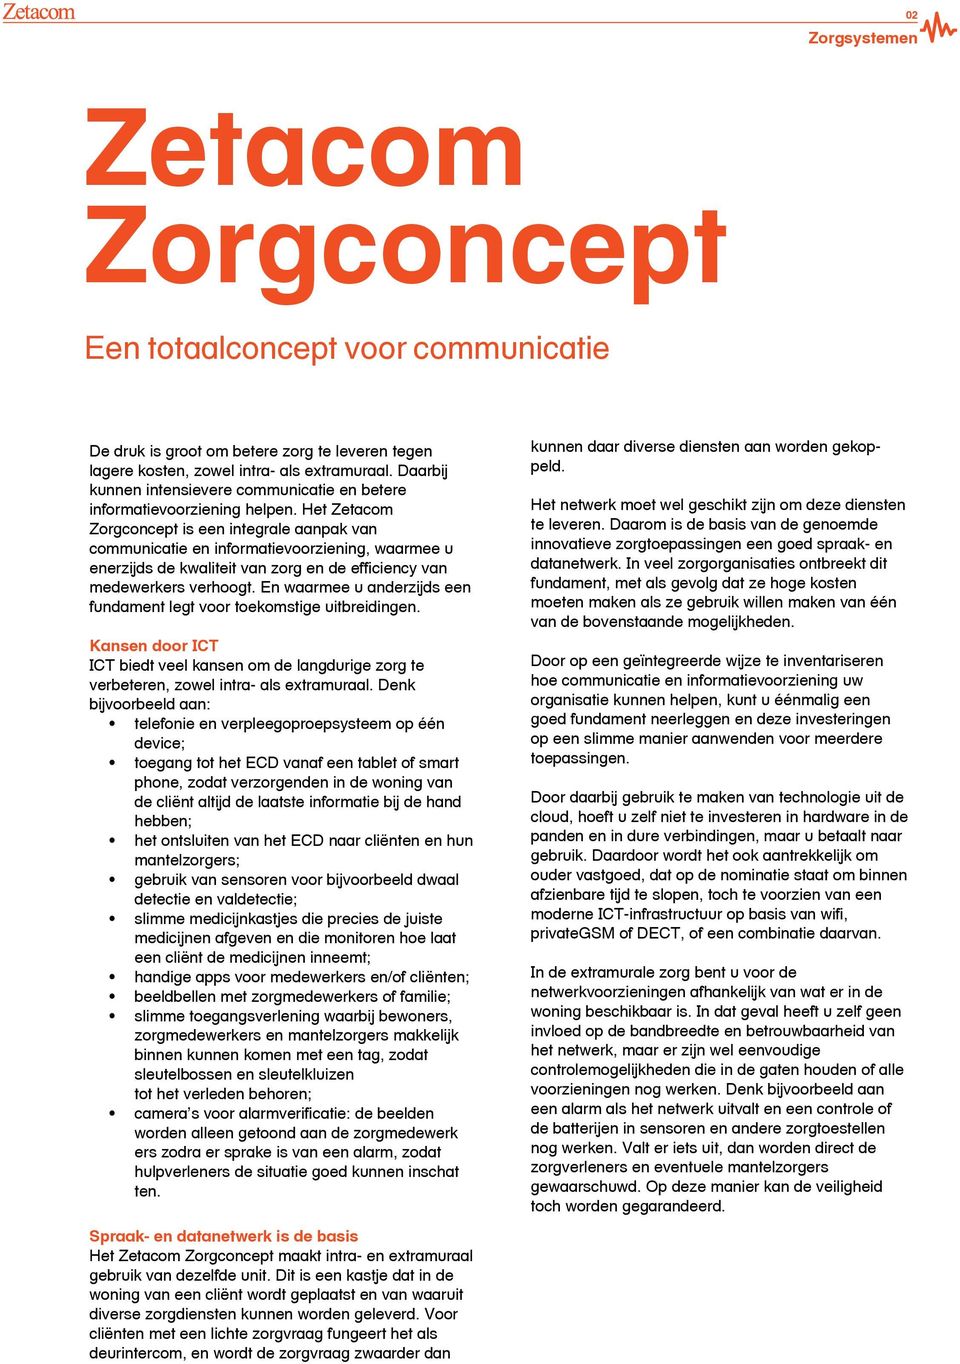 Het Zetacom Zorgconcept is een integrale aanpak van communicatie en informatievoorziening, waarmee u enerzijds de kwaliteit van zorg en de efficiency van medewerkers verhoogt.